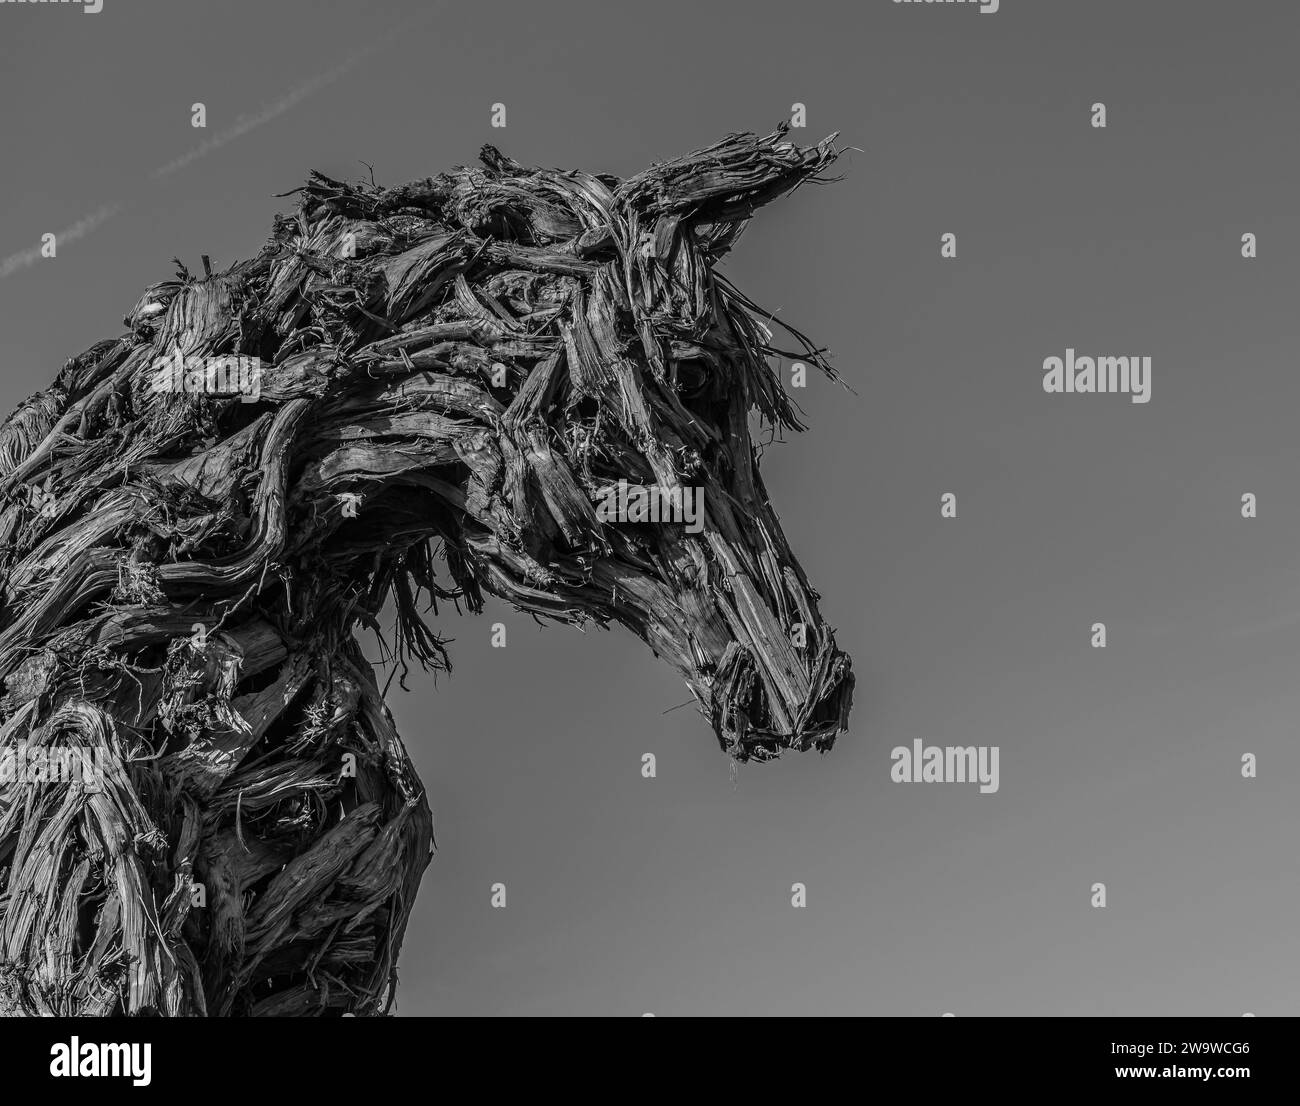 Il grande cavallo di legno dell'artista Marco Martalar a Strembo, paese della provincia di Trento, Trentino alto Adige, Italia settentrionale, Europa, Foto Stock